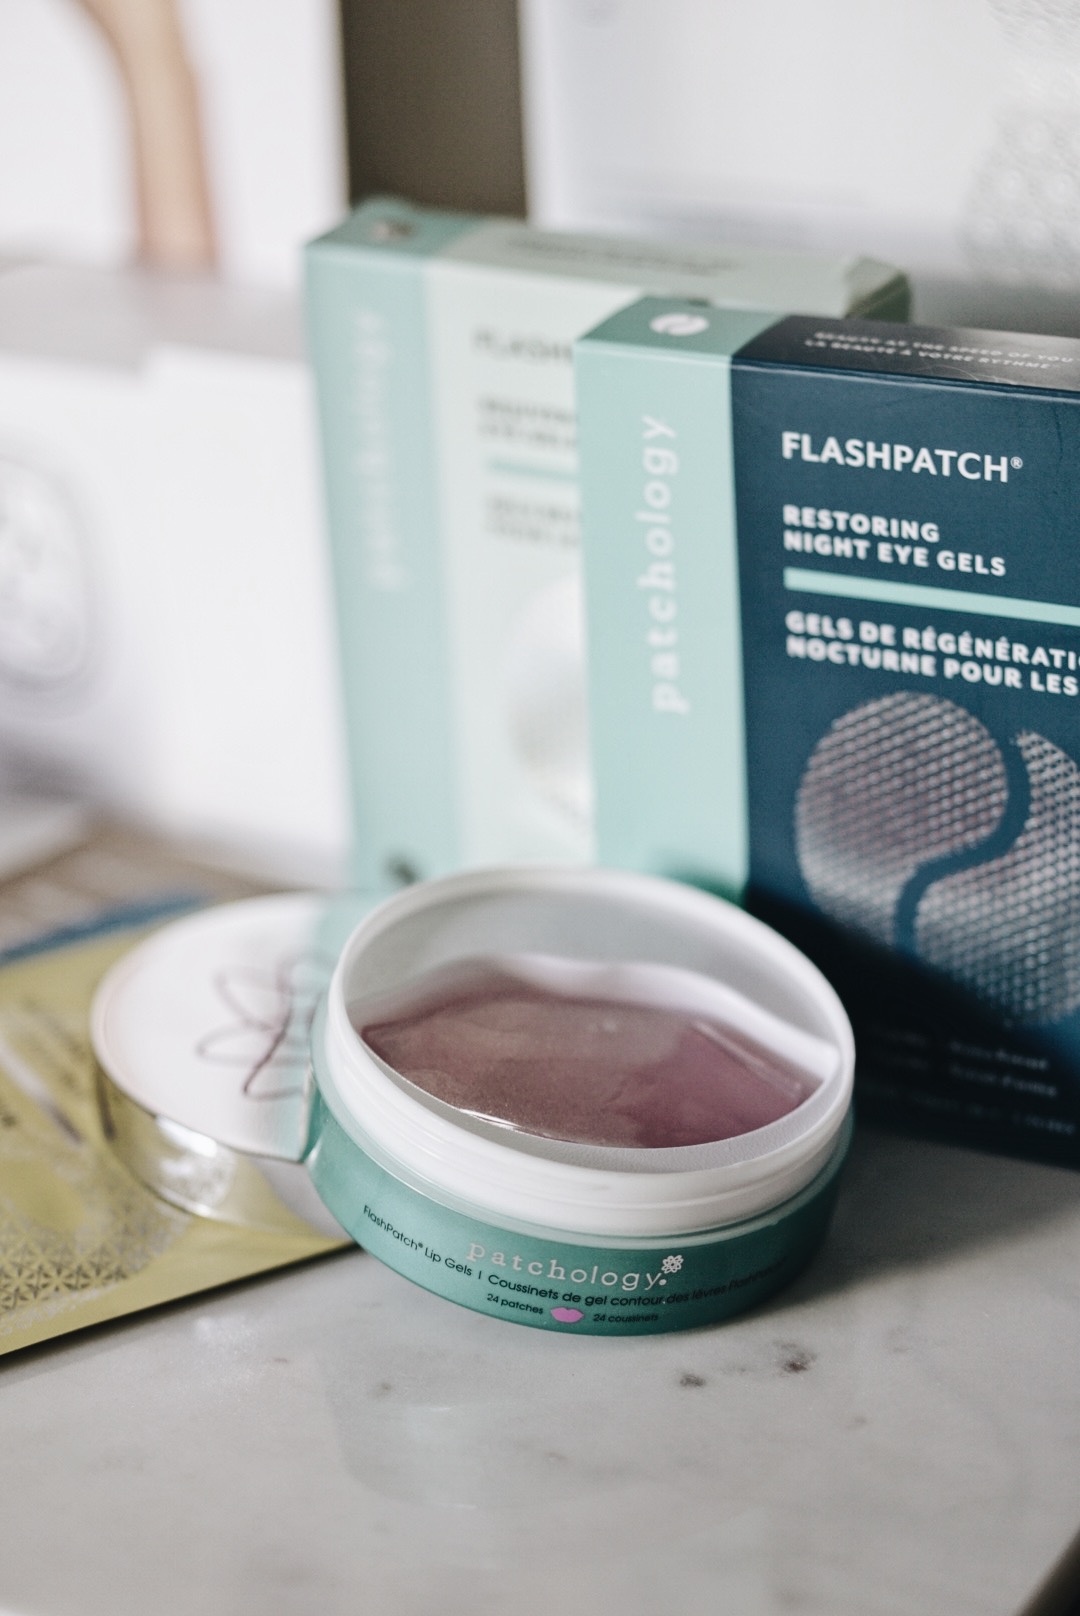 Patchology FlashPatch Restoring Night Eye Gels at Renata's Organic